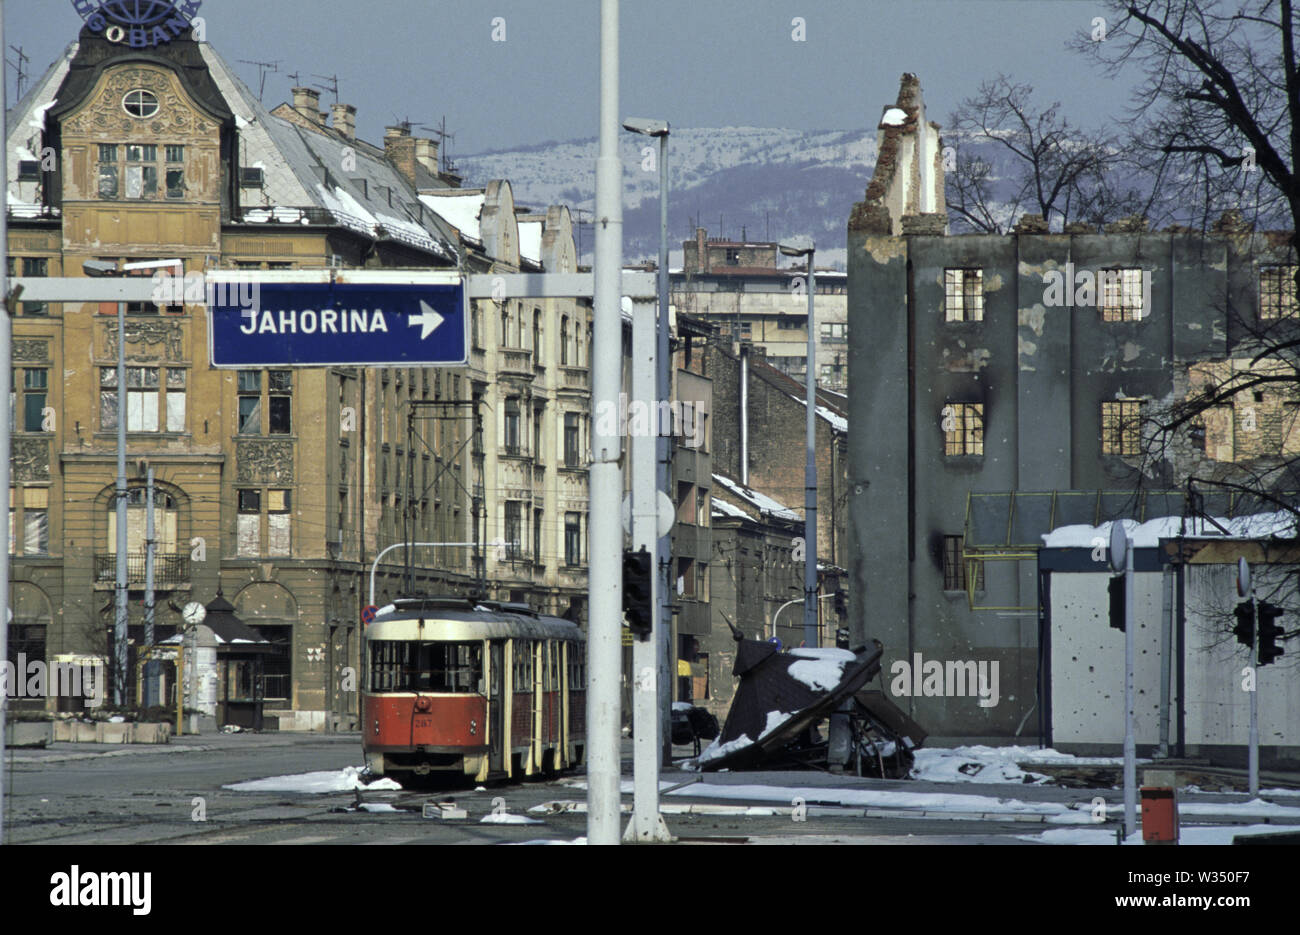 2 aprile 1993 durante l'assedio di Sarajevo: un scatafascio tram giace abbandonata dove 'Sniper Alley' termina e la città vecchia di Sarajevo inizia. Foto Stock